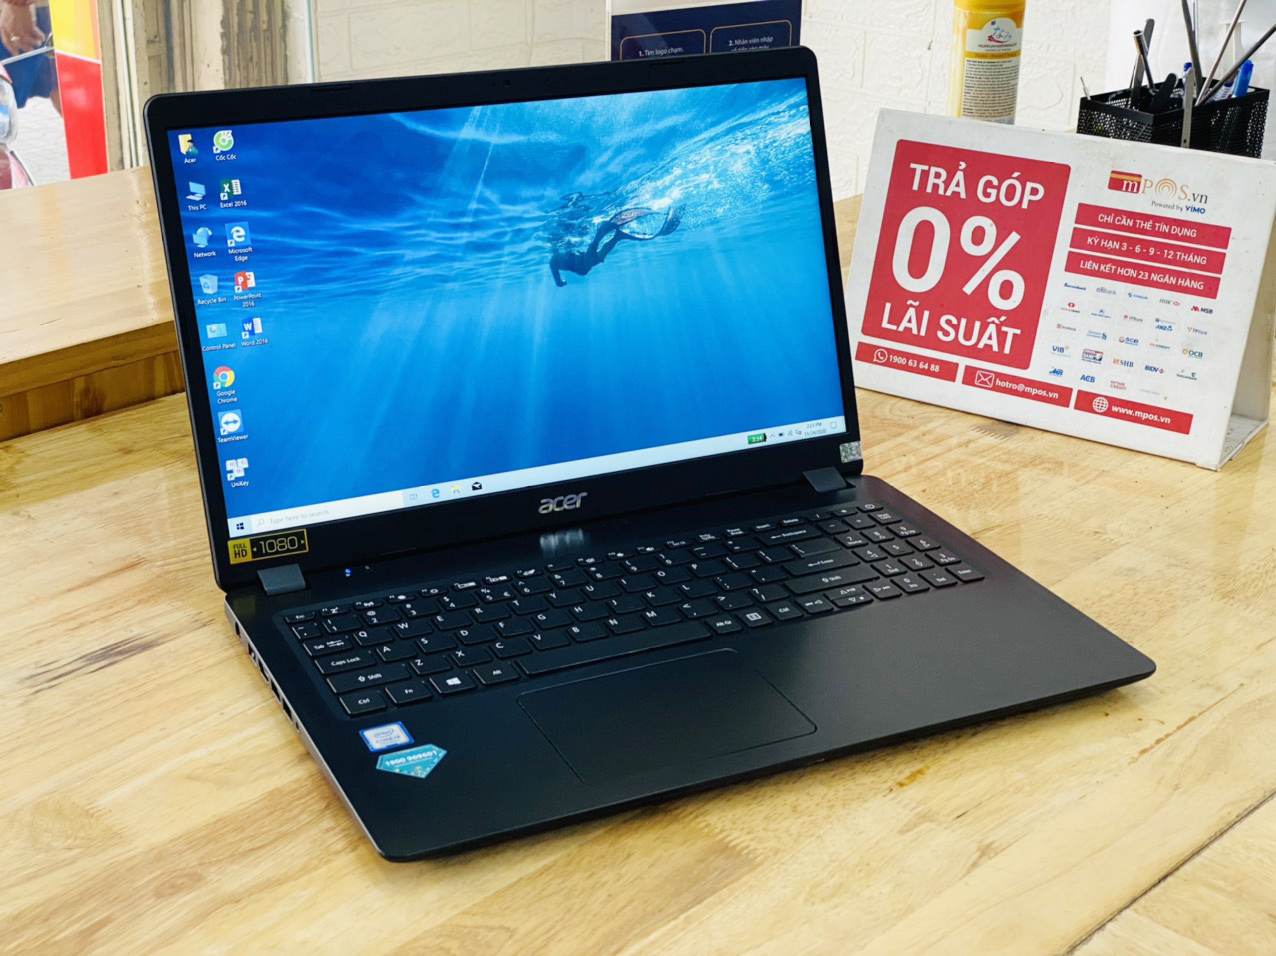 Laptop Acer Aspire A315 i3-7020U Ram 8G SSD 256G 15.6 inch Full HD Viền Mỏng Đẹp Giá Rẻ